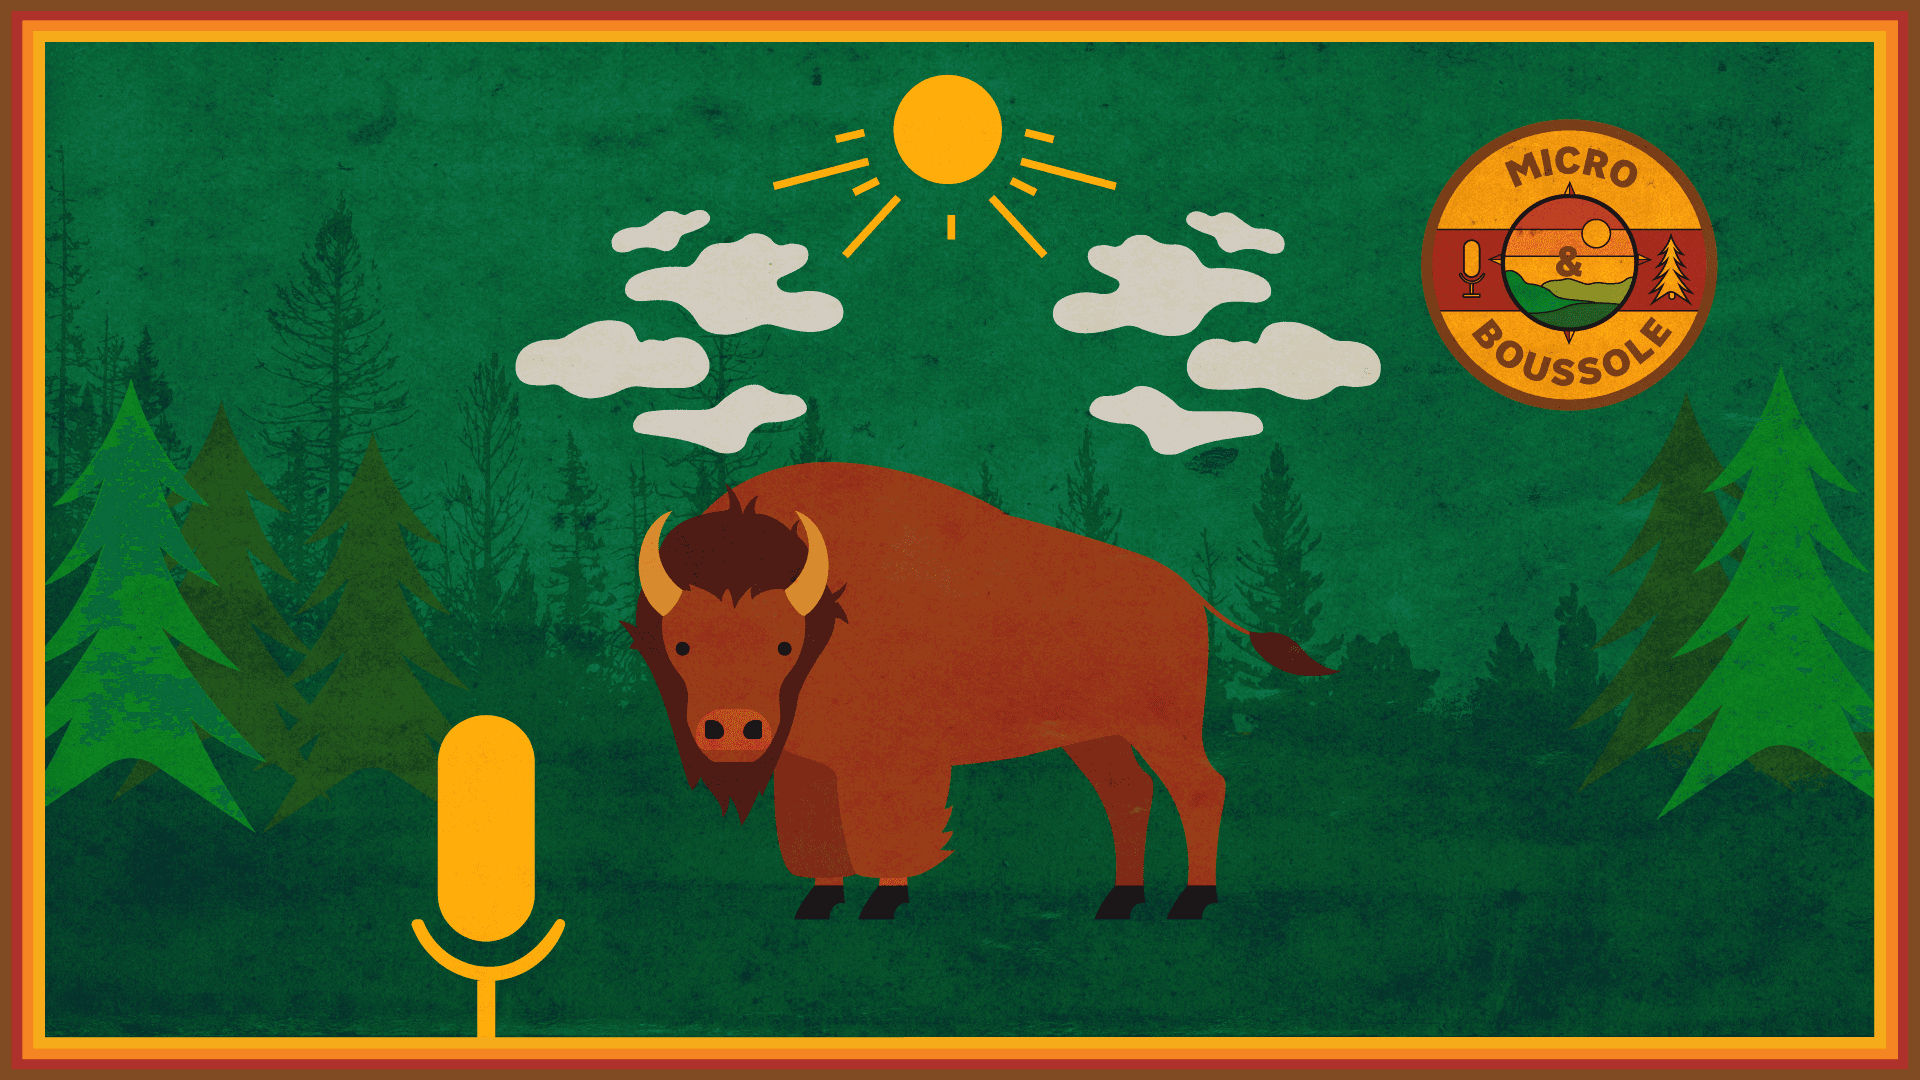 Les bisons d'Earlton, ces géants du Nord